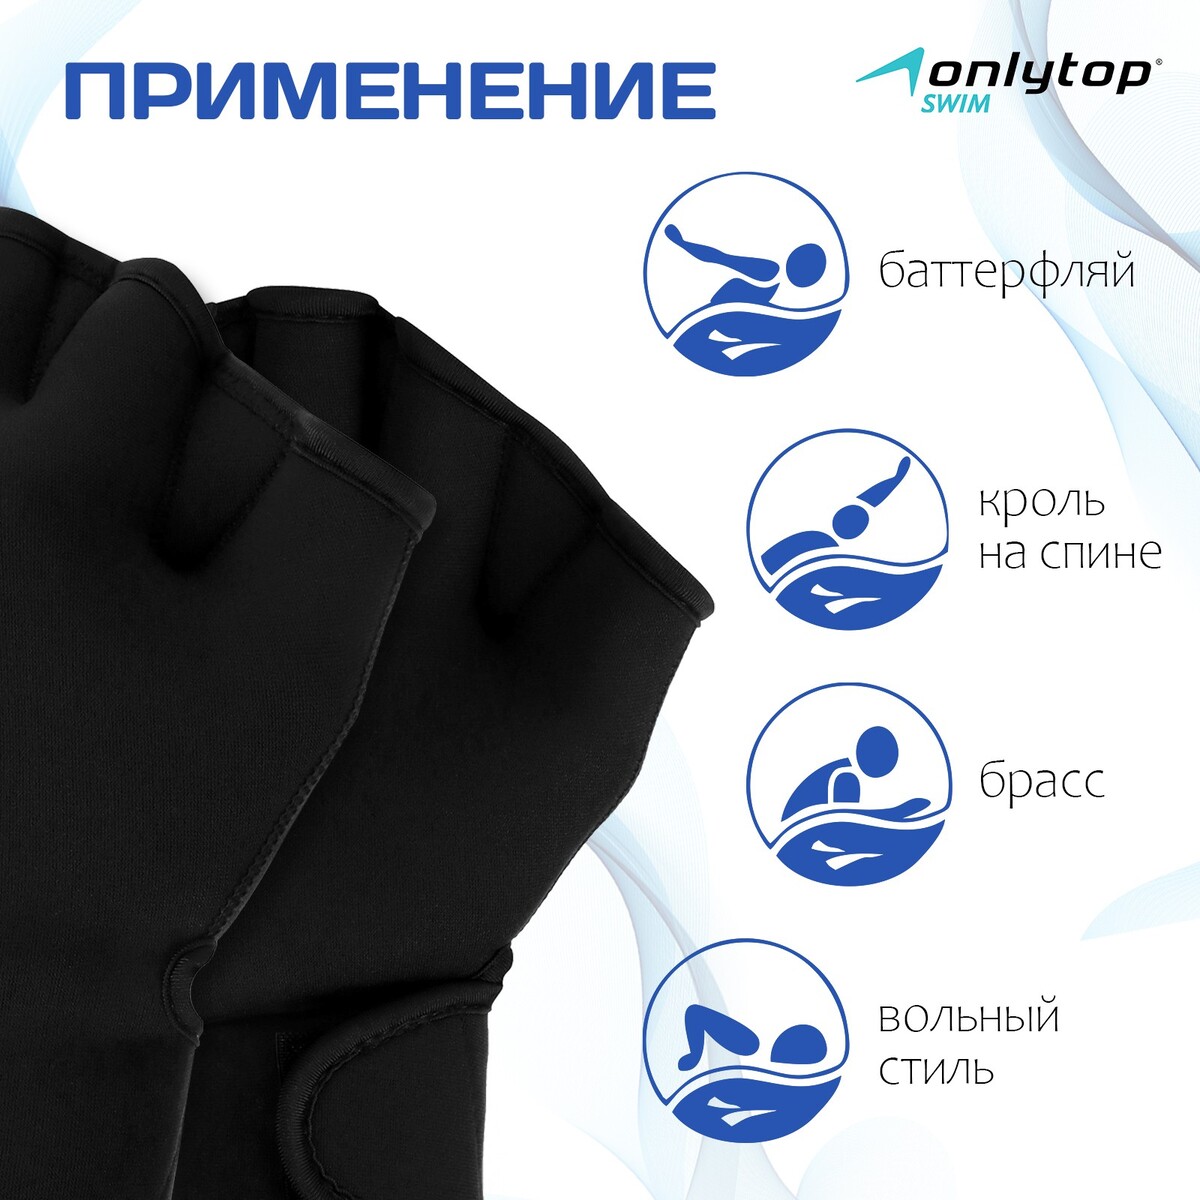 фото Перчатки для плавания onlytop, неопрен, 2.5 мм, р. m, цвет черный